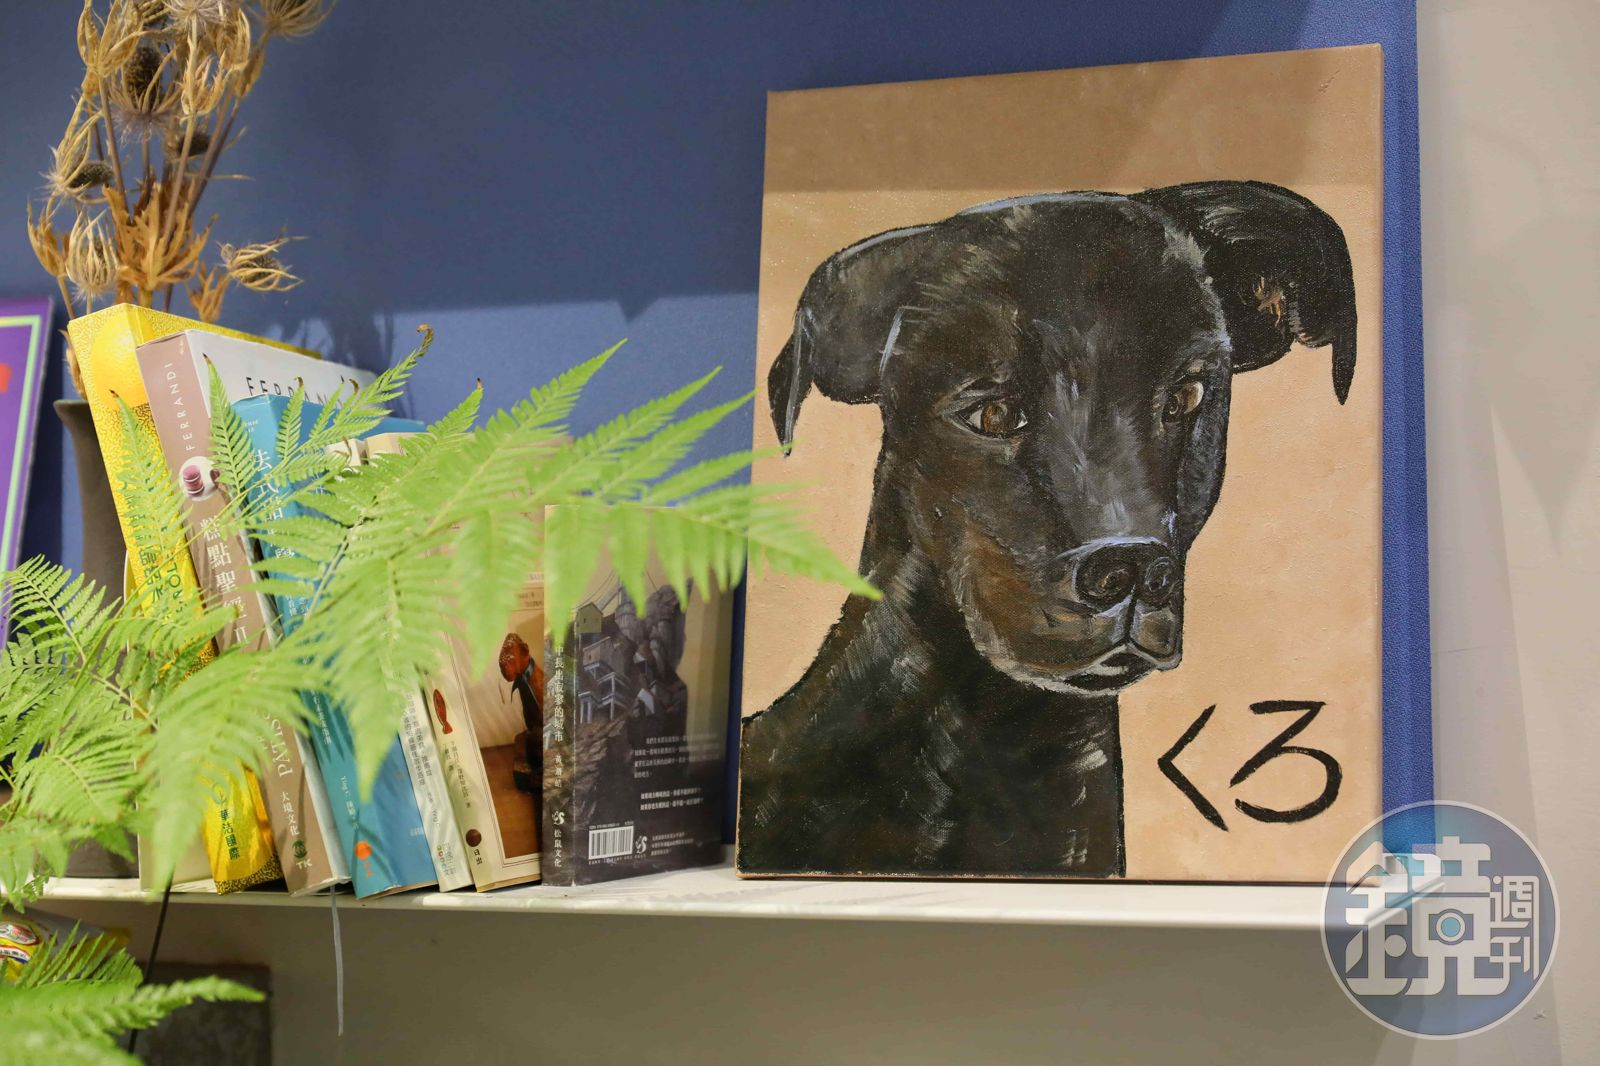 老闆吳旻學屬於狗派，店內各處都能看到關於狗狗的畫像、玩具公仔等陳設。